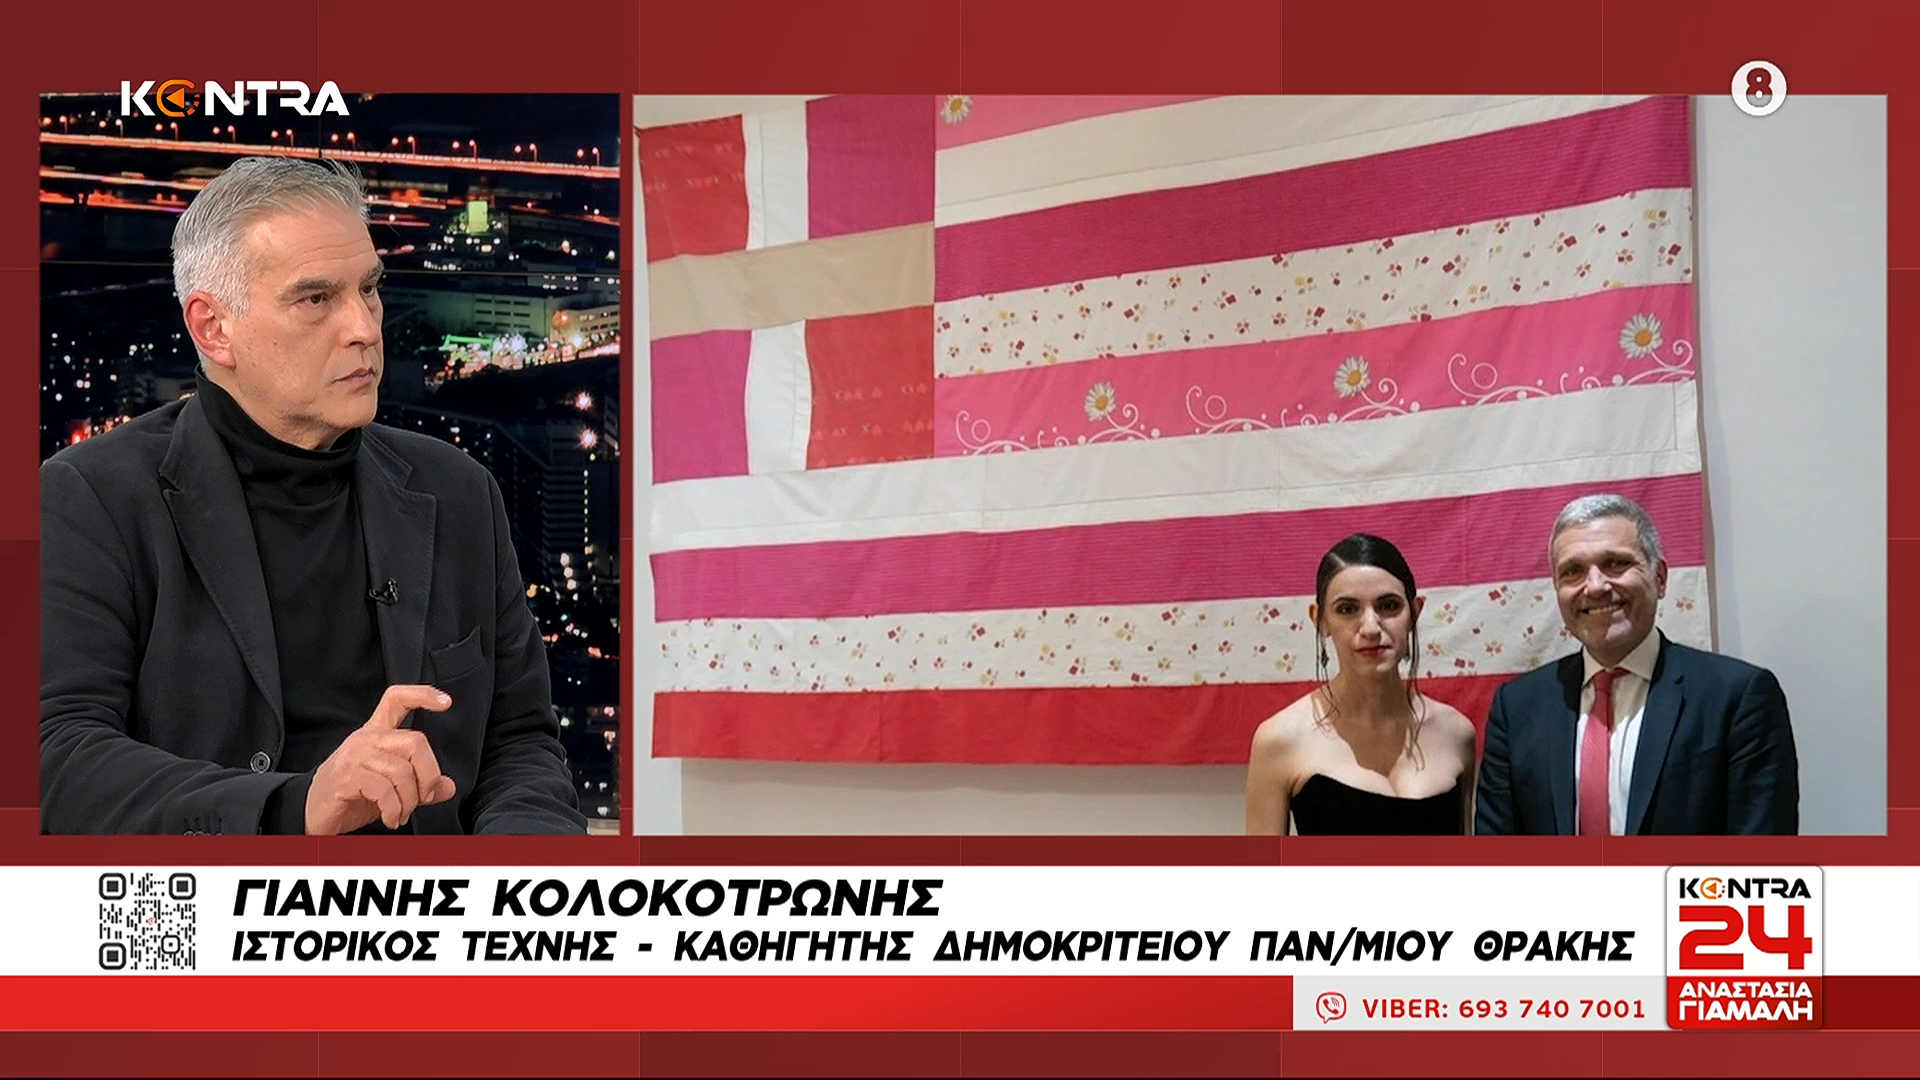 «Προσβολή για την τέχνη η λογοκρισία της ροζ σημαίας» Ο καθηγητής Γιάννης Κολοκοτρώνης στο Kontra24